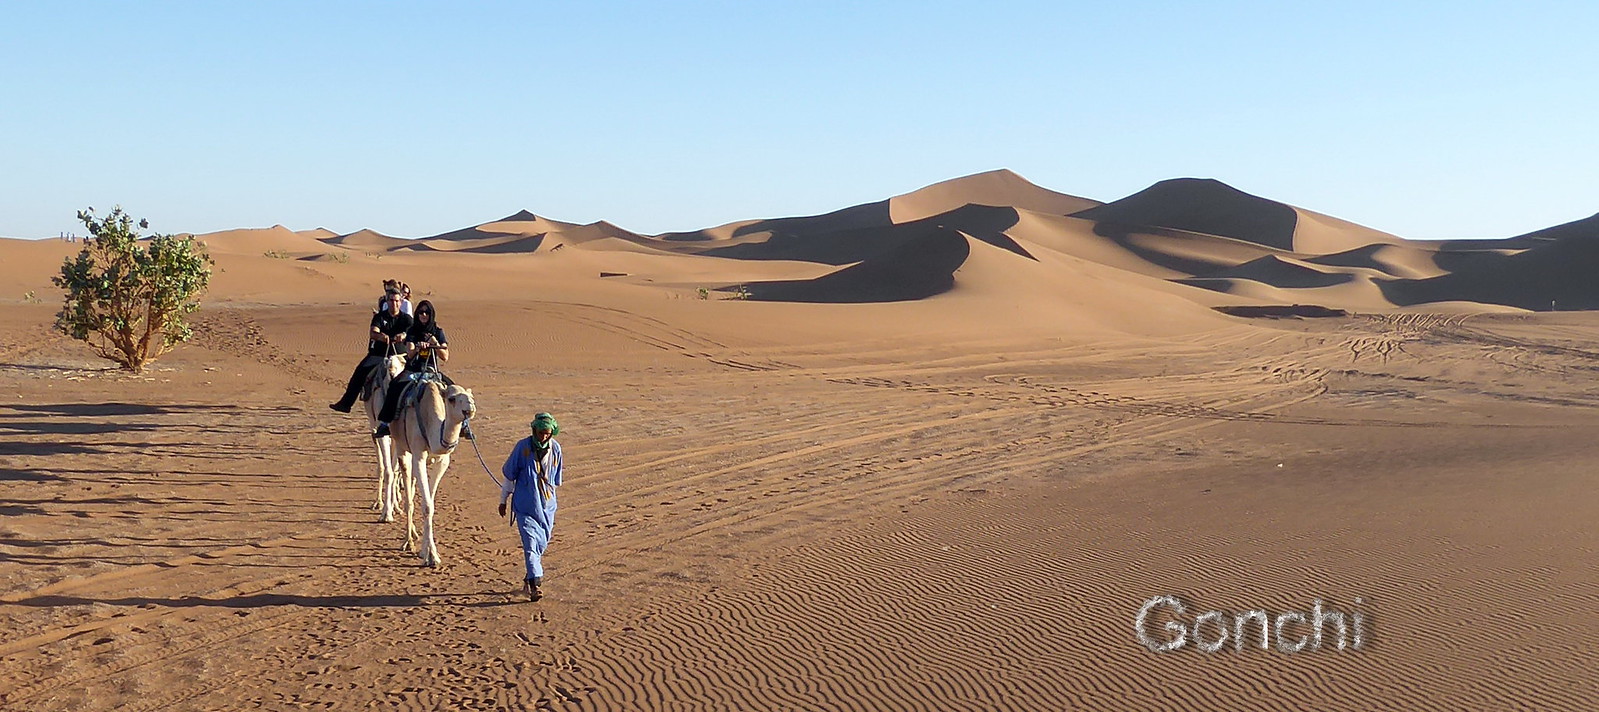 MARRUECOS SORPRENDE - Blogs de Marruecos - El Sahara. Desierto de Erg Chegaga (1)